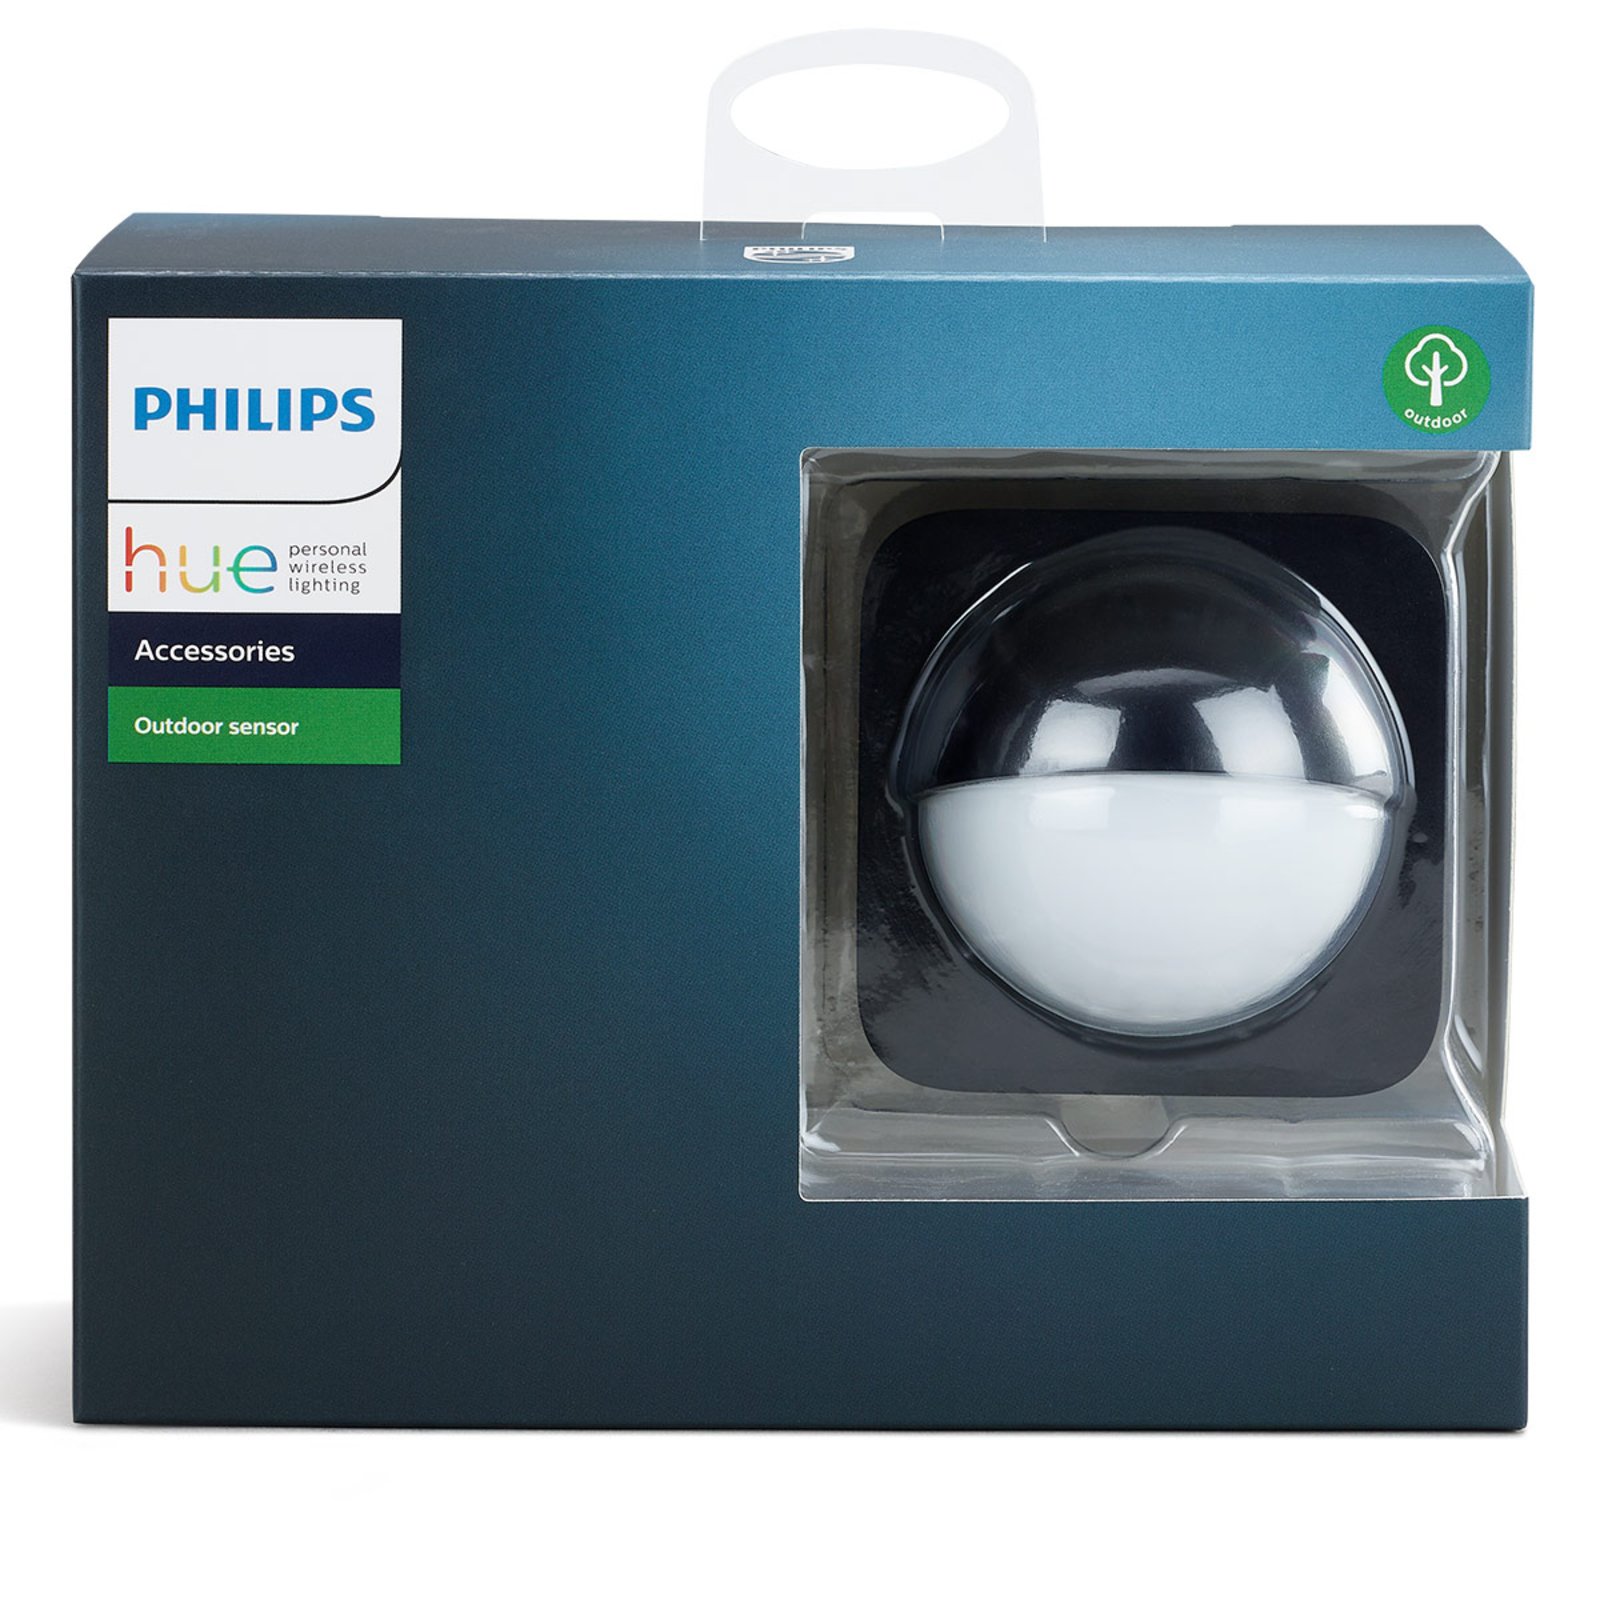 Philips Hue Outdoor Sensor bevegelsessensor